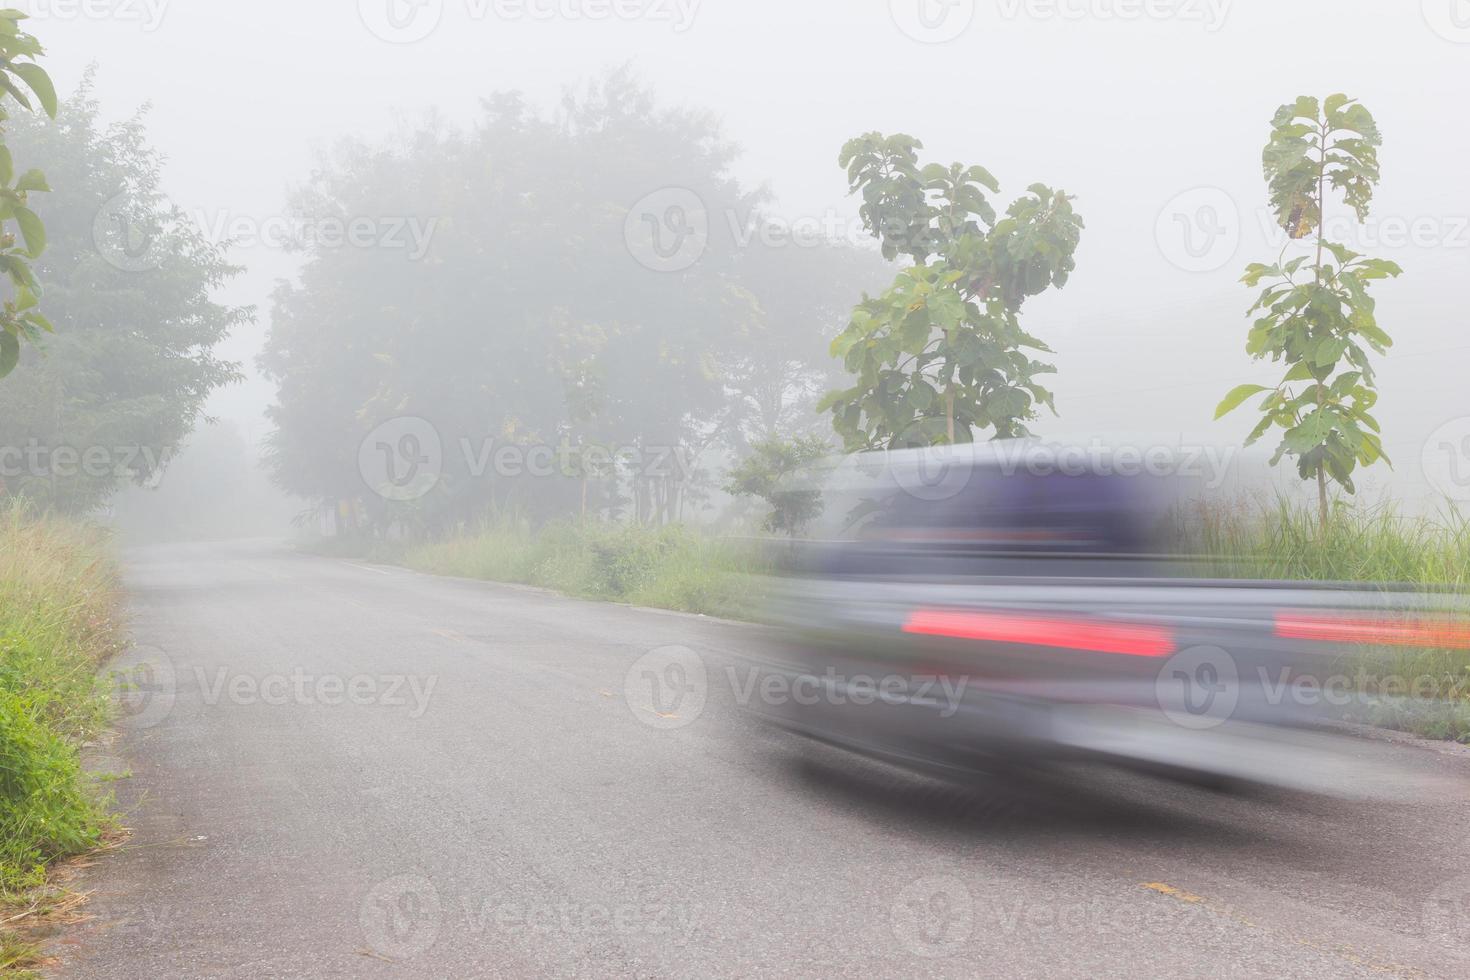 rörelseoskärpa av bil på väg på dimmig morgon foto